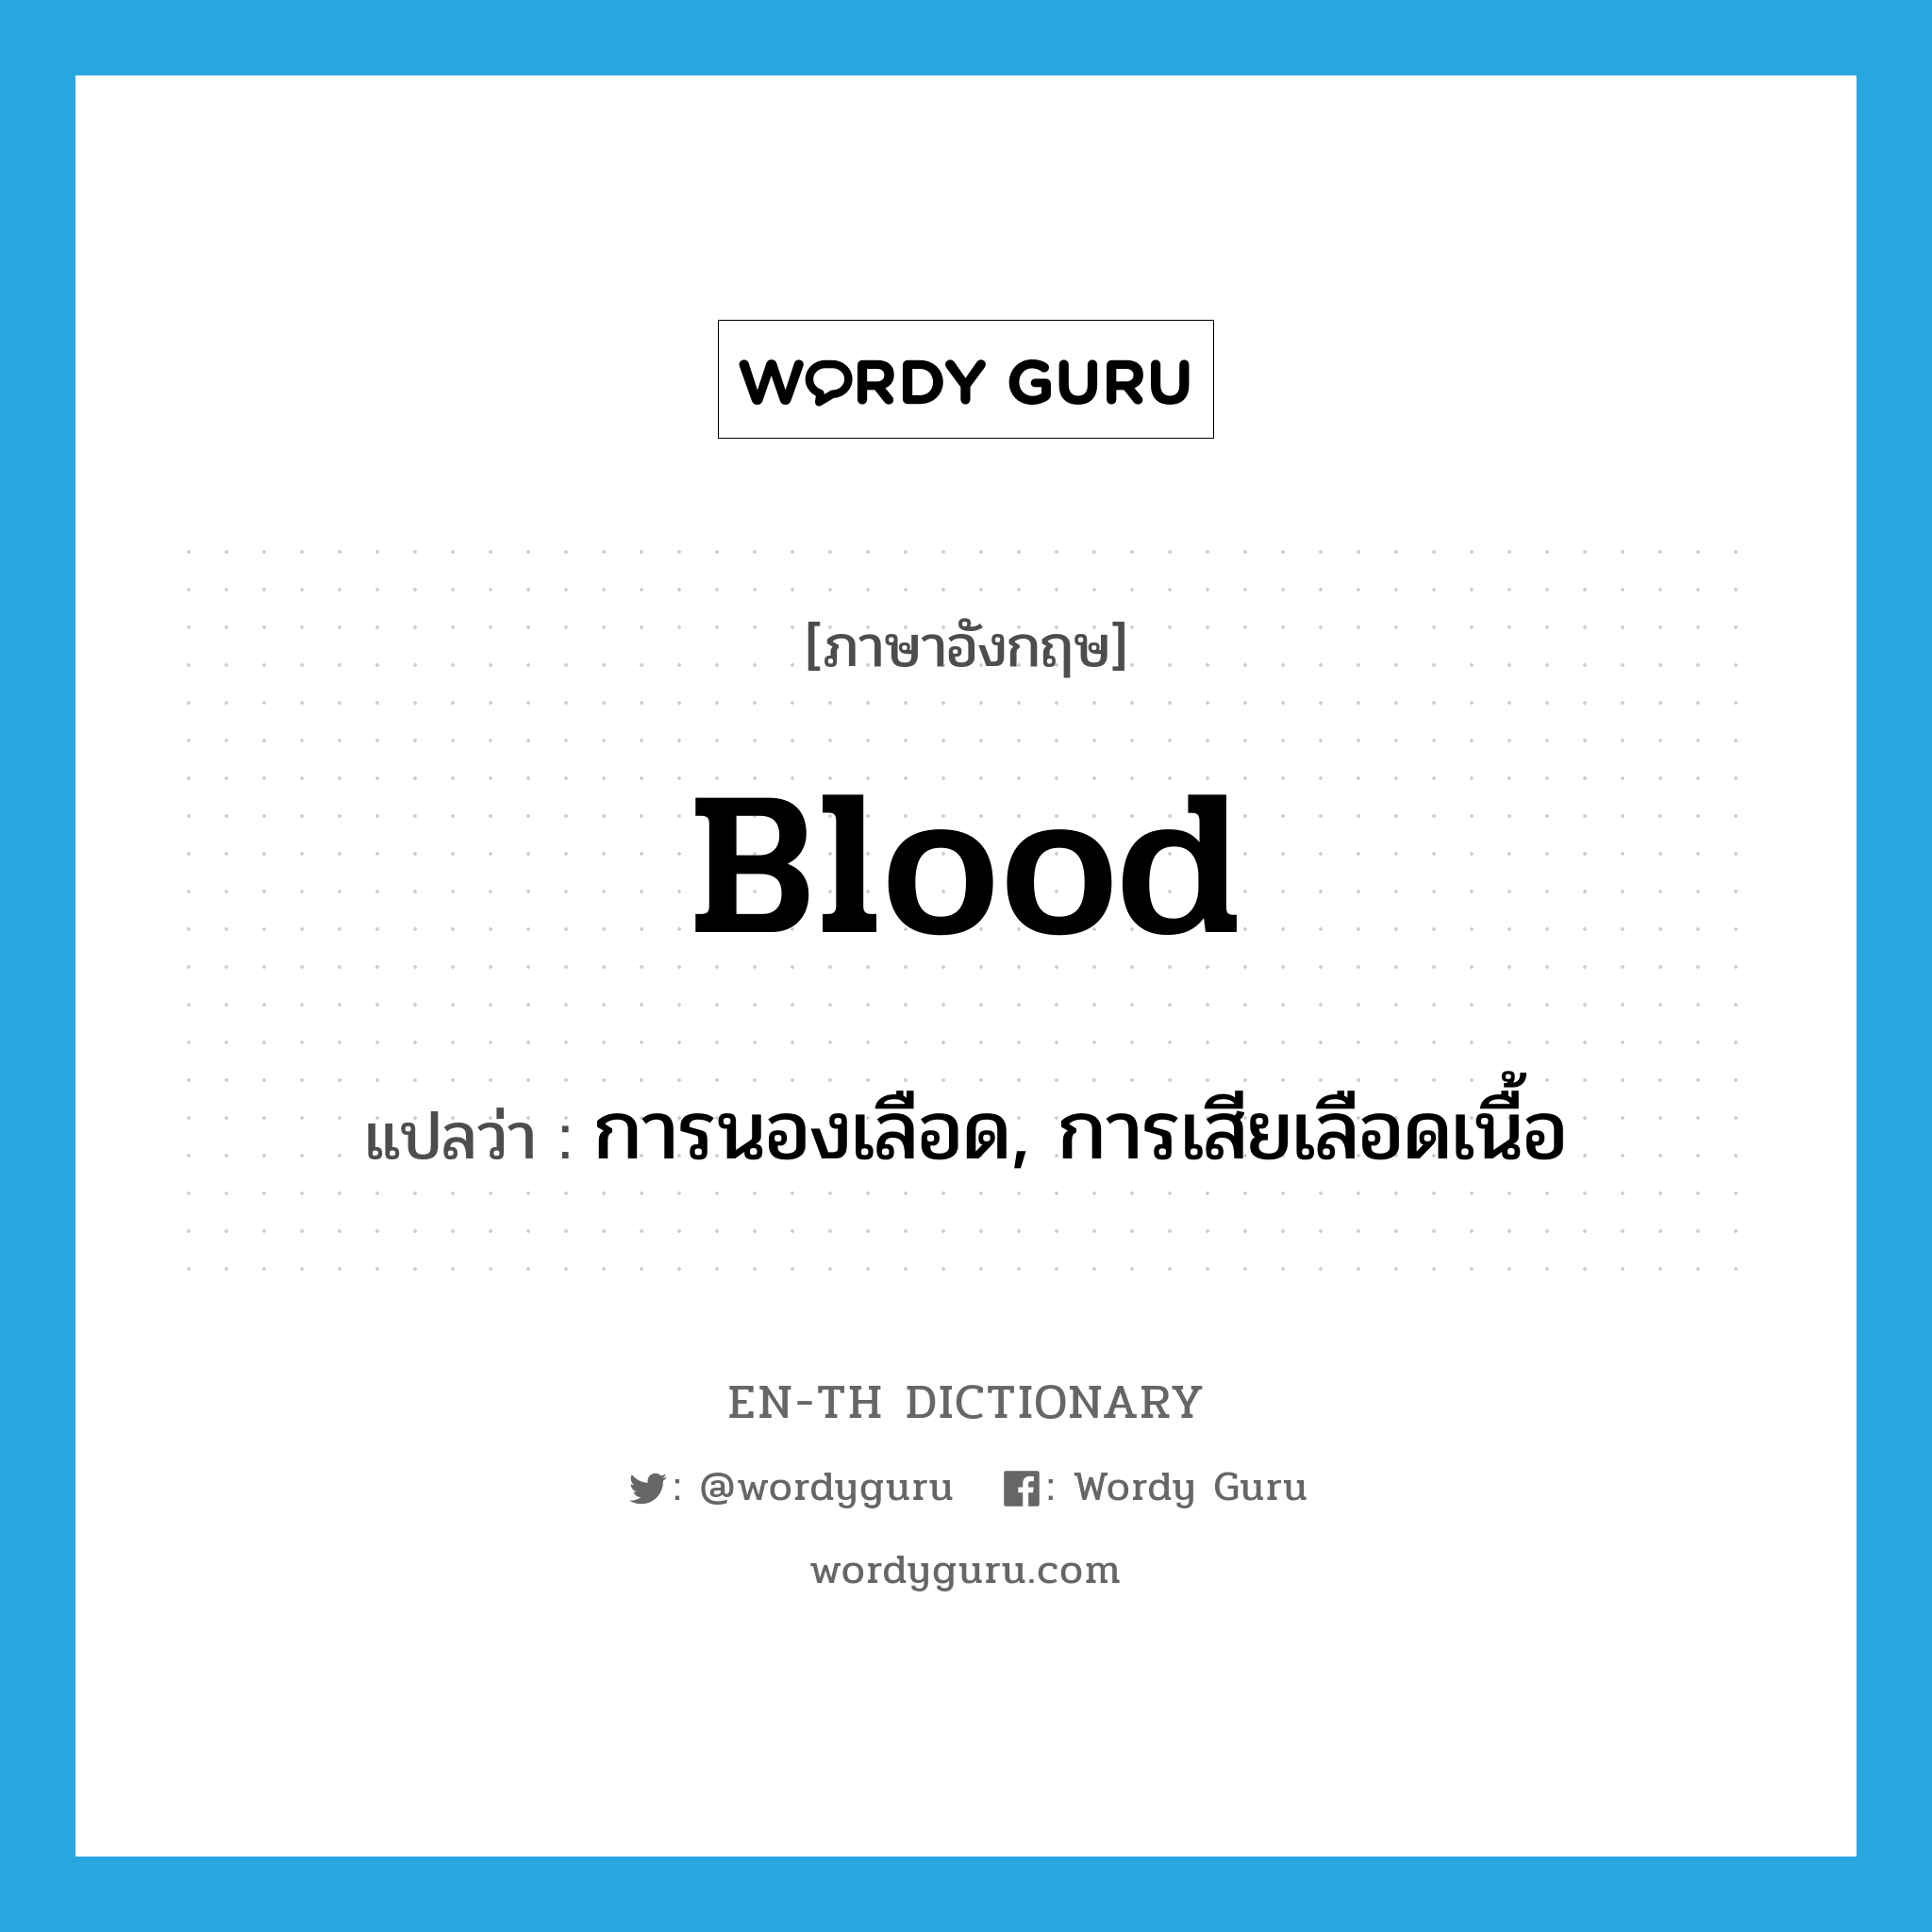 การนองเลือด, การเสียเลือดเนื้อ ภาษาอังกฤษ?, คำศัพท์ภาษาอังกฤษ การนองเลือด, การเสียเลือดเนื้อ แปลว่า blood ประเภท N หมวด N